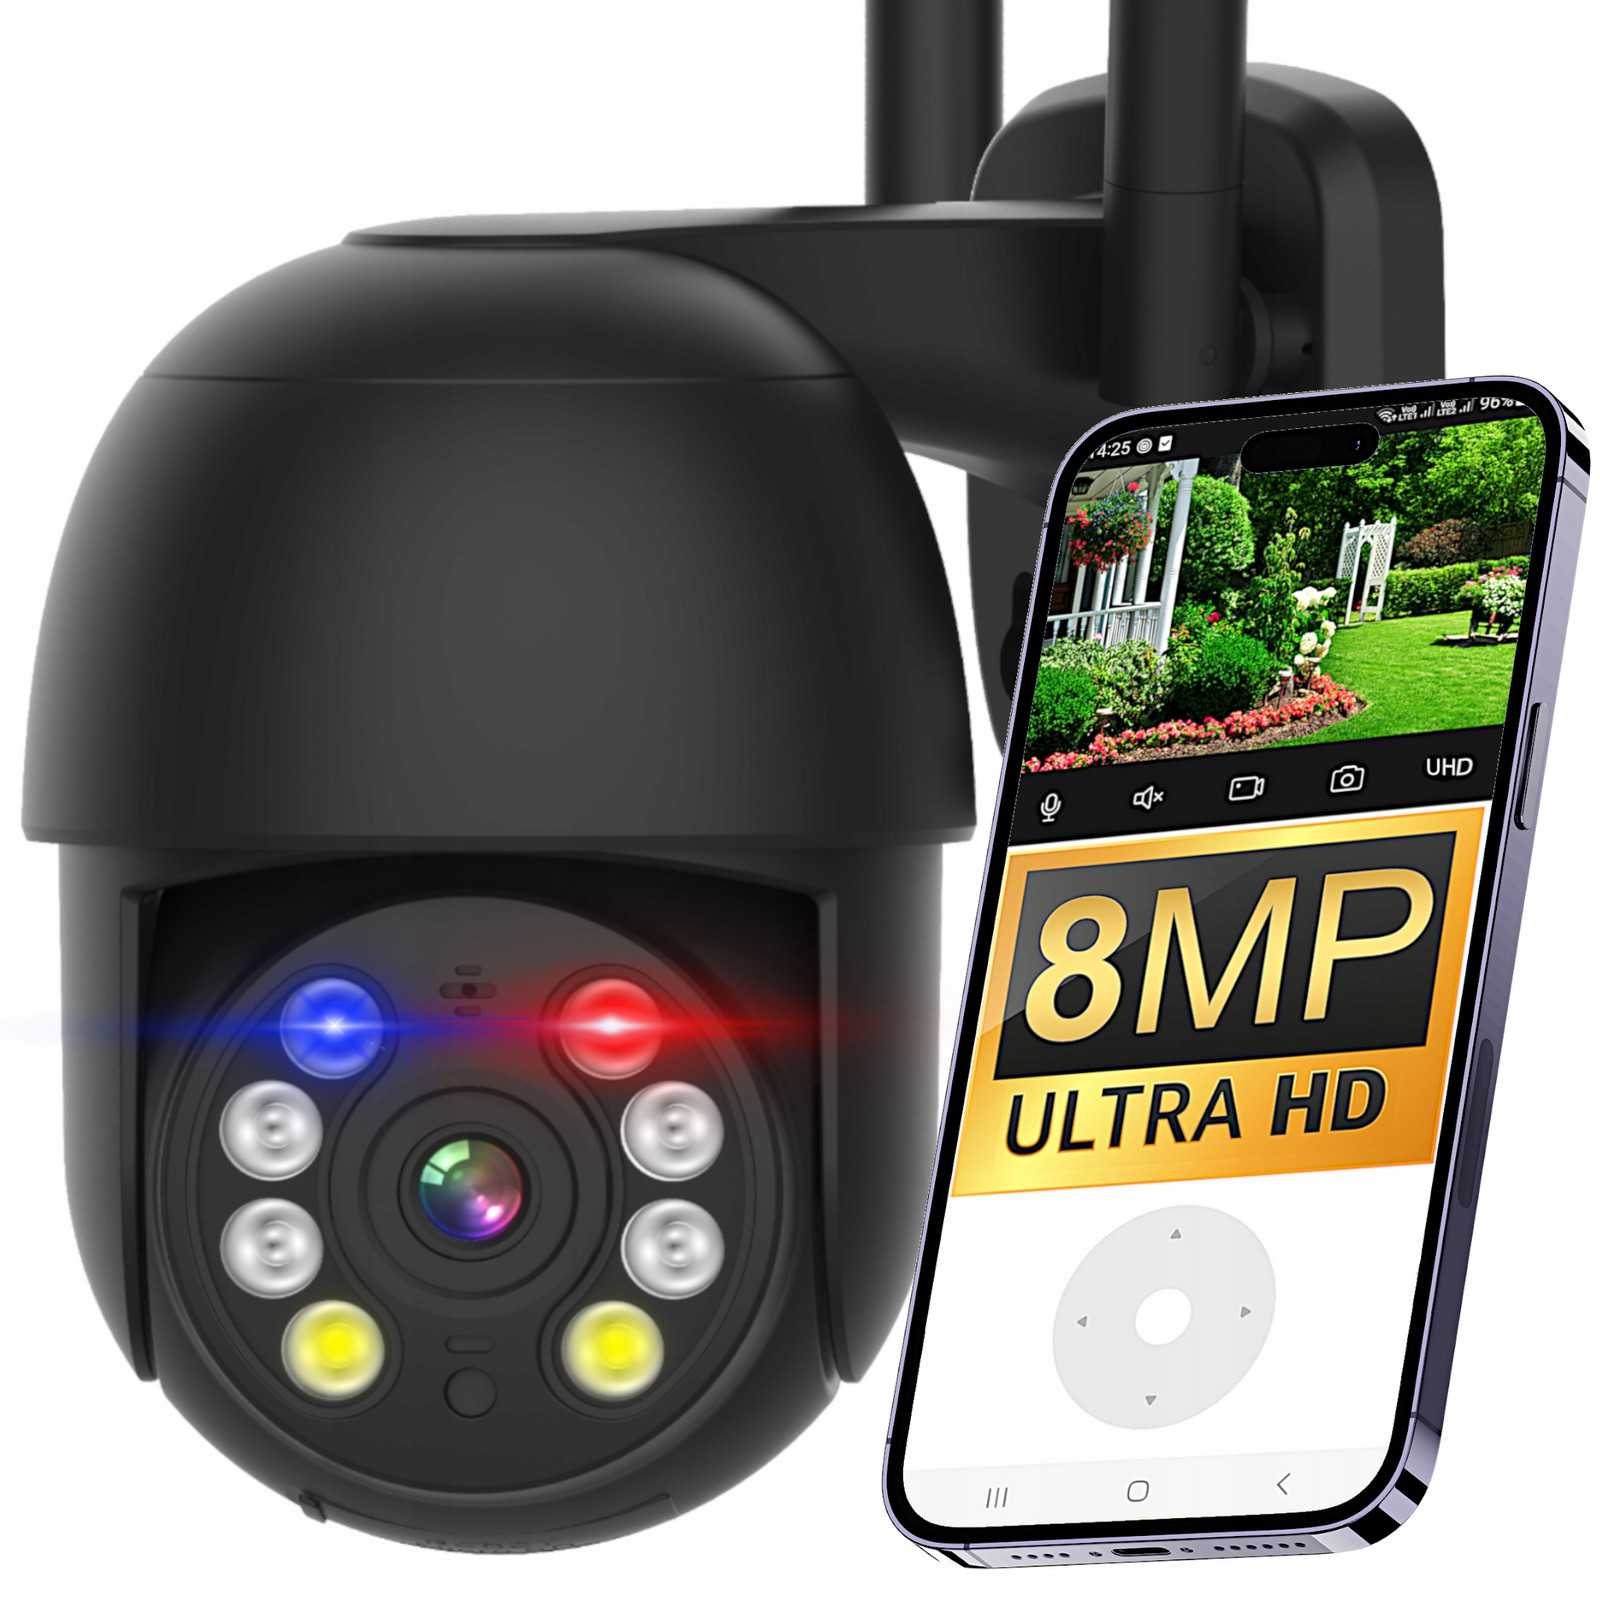 Venkovní otočná kamera WiFi Poliční Světlo 8MP Ultra Hd 8MPx Černá